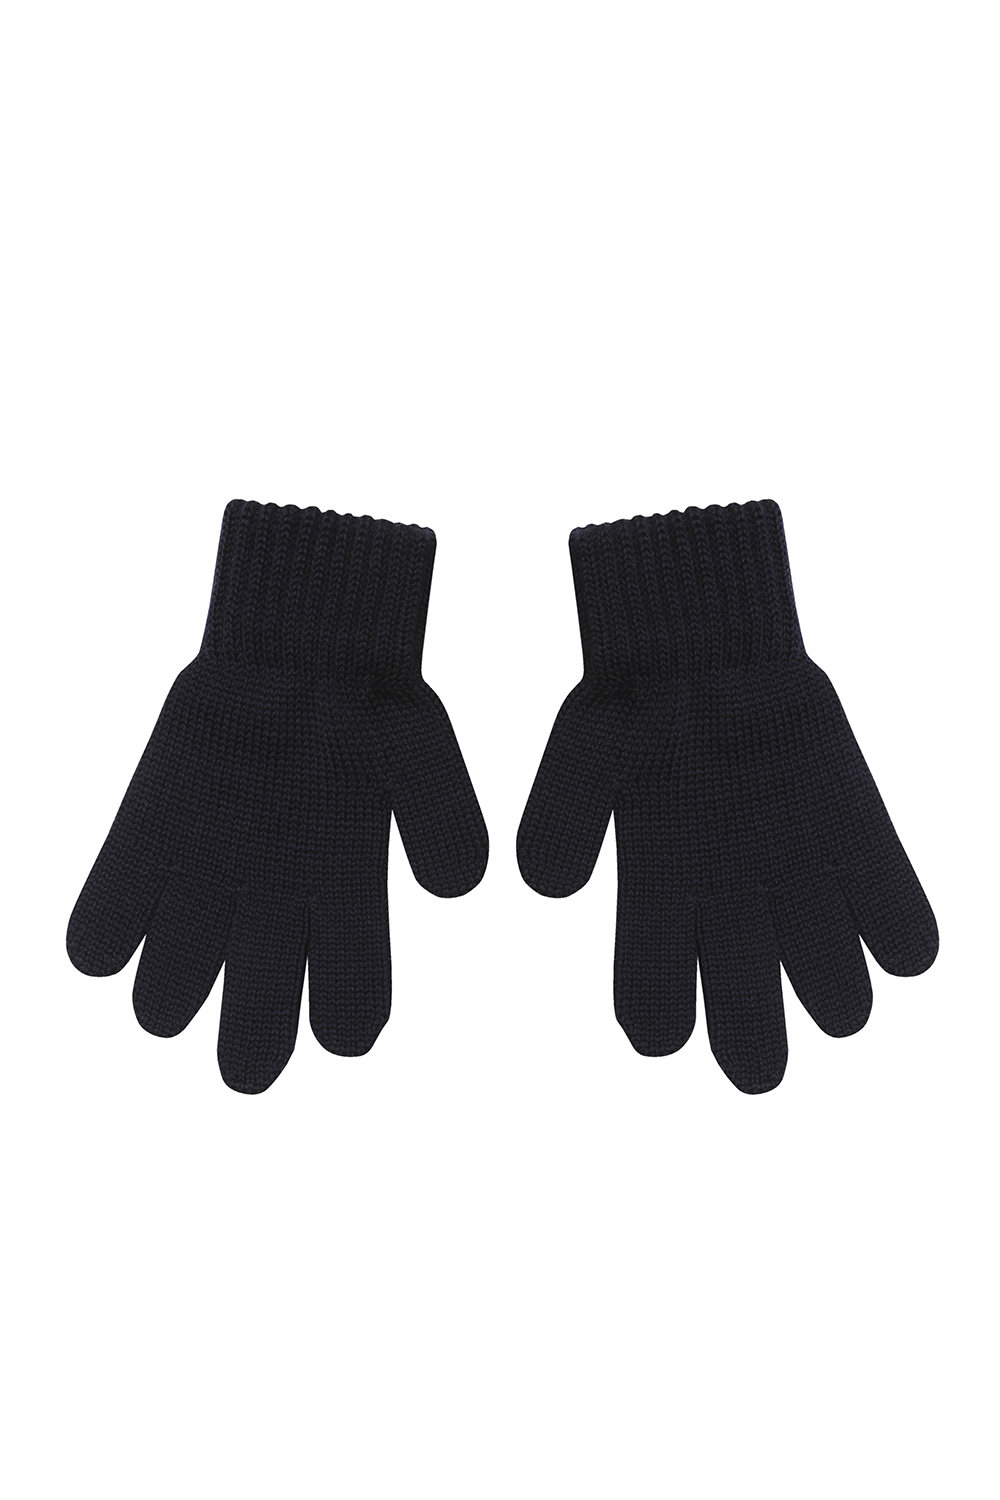 Чёрные перчатки со стразами